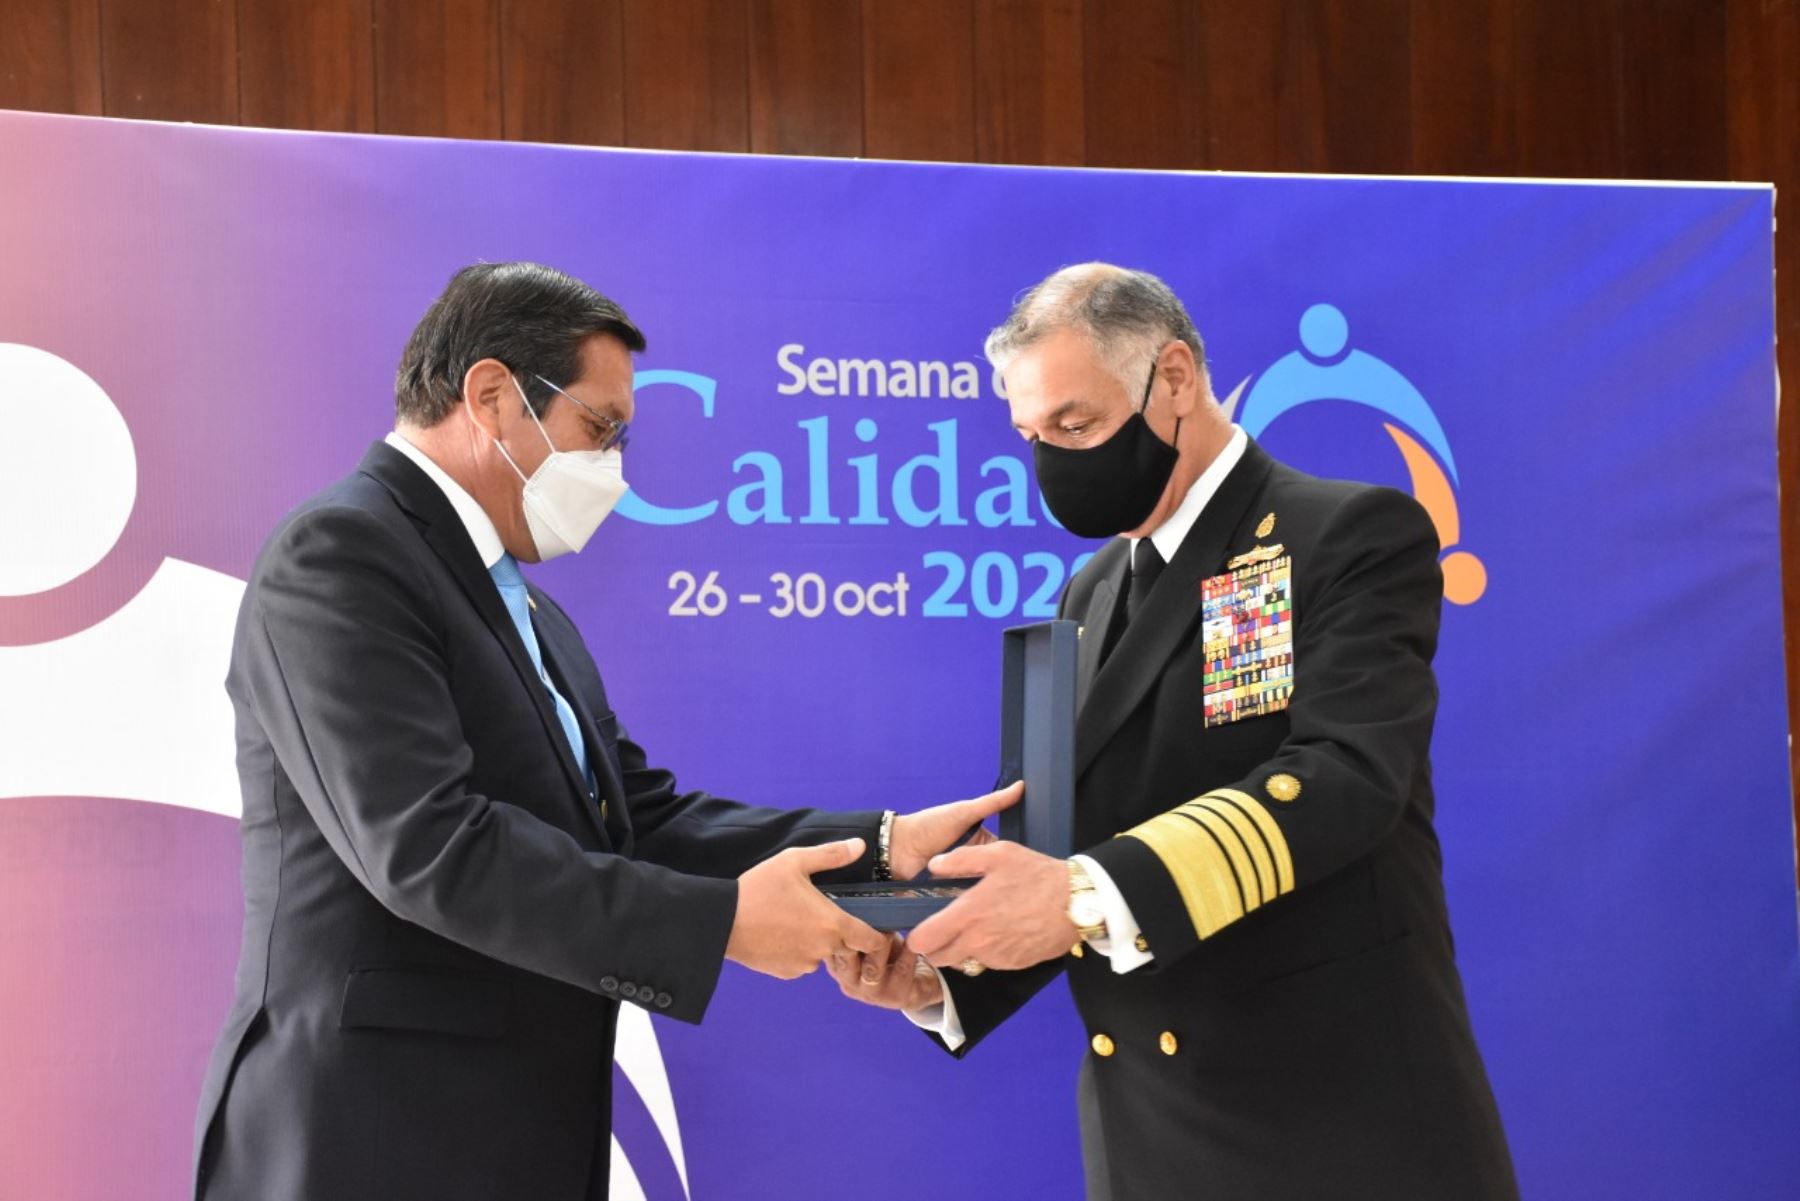 La Marina de Guerra del Perú recibió el Premio Nacional a la Calidad y Medalla Líder en Calidad Categoría Oro, en la trigésima edición de la Semana de la Calidad, la cual este 2020 lleva por lema "Éxito, en la incertidumbre". Foto: Marina de Guerra del Perú